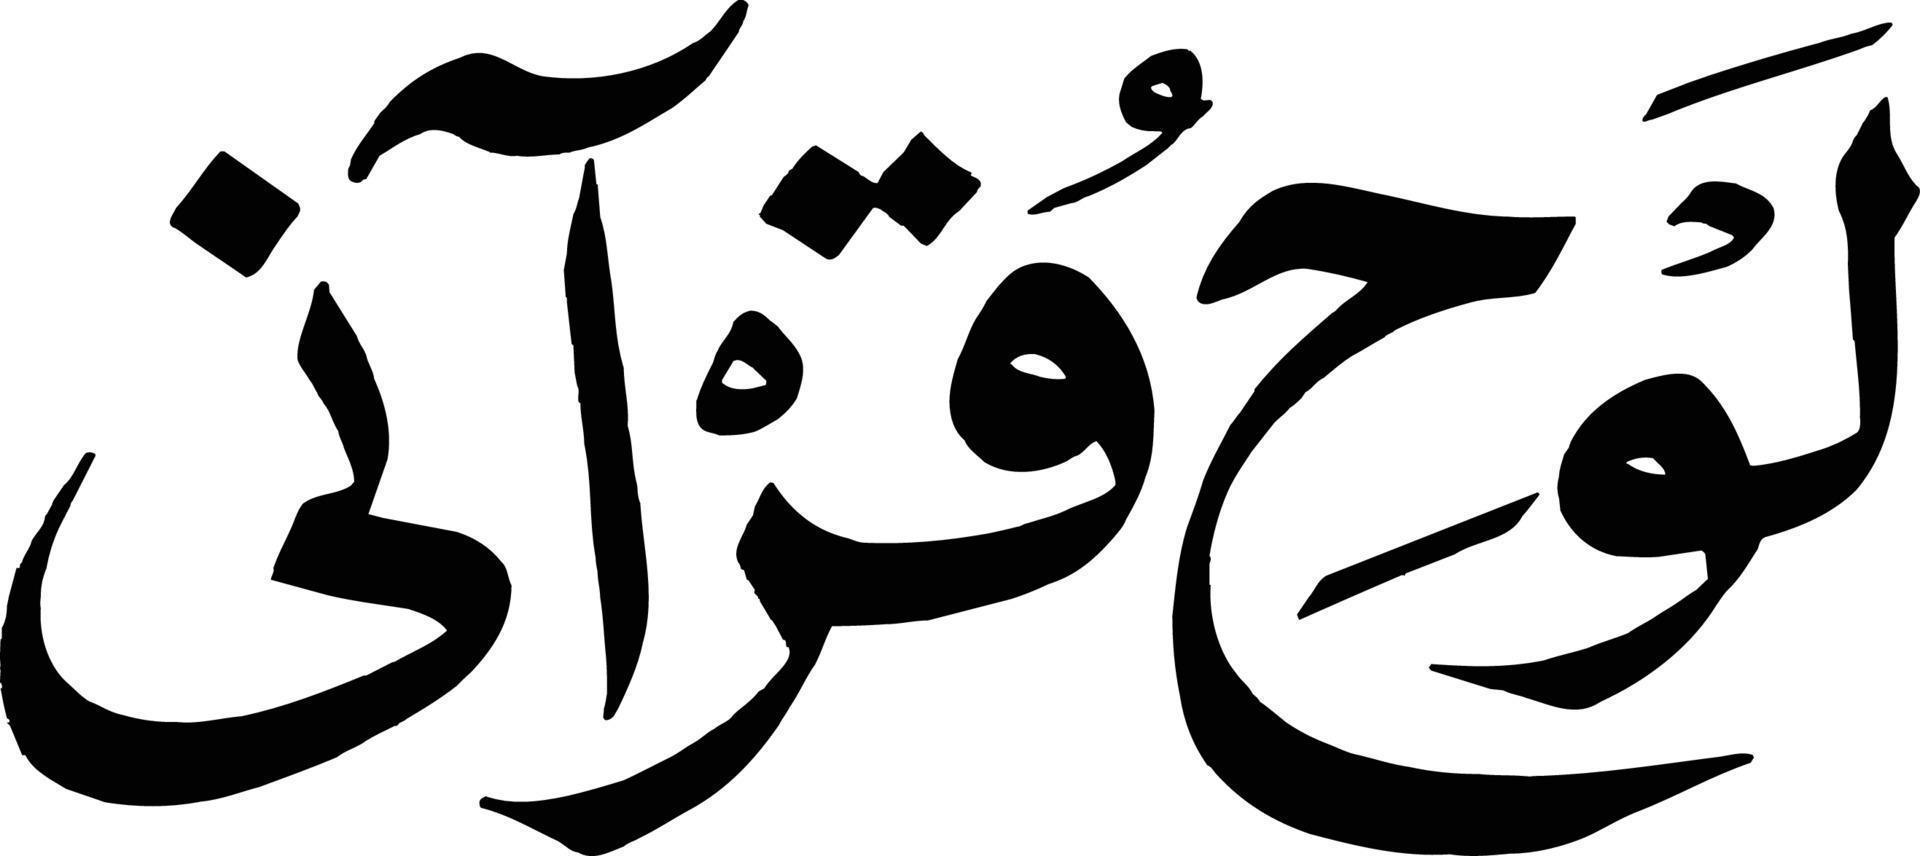 lohe qurani titre calligraphie islamique vecteur gratuit